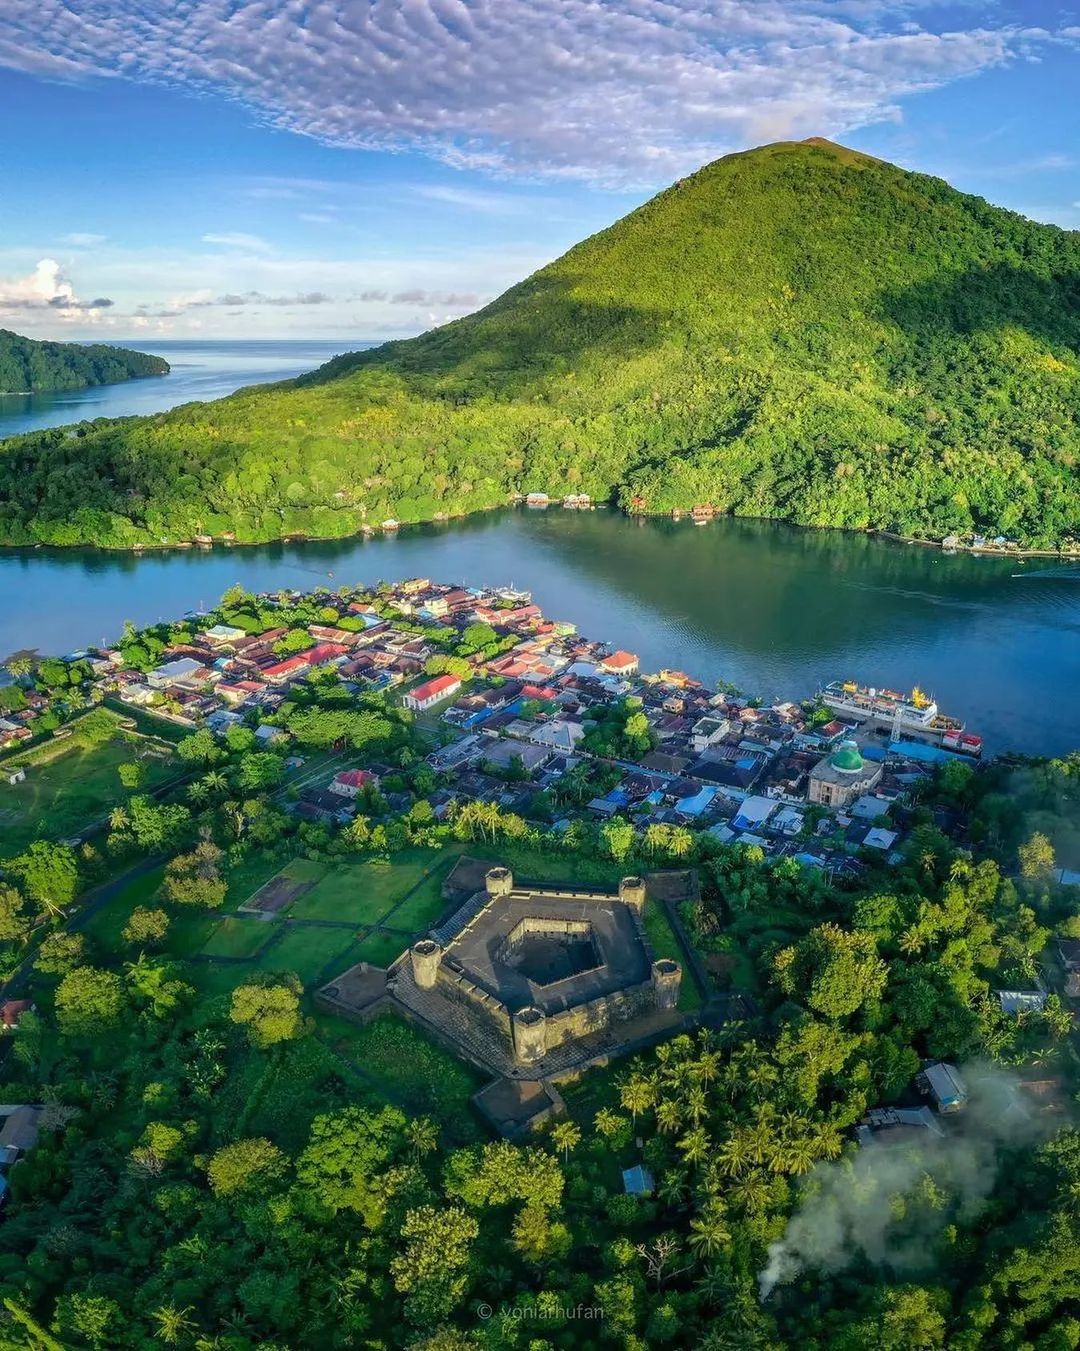 Temukan keindahan alam dan kebudayaan khas Banda Neira, salah satu pulau tersembunyi di Maluku. Jelajahi destinasi wisata dan objek budaya yang menakjubkan.